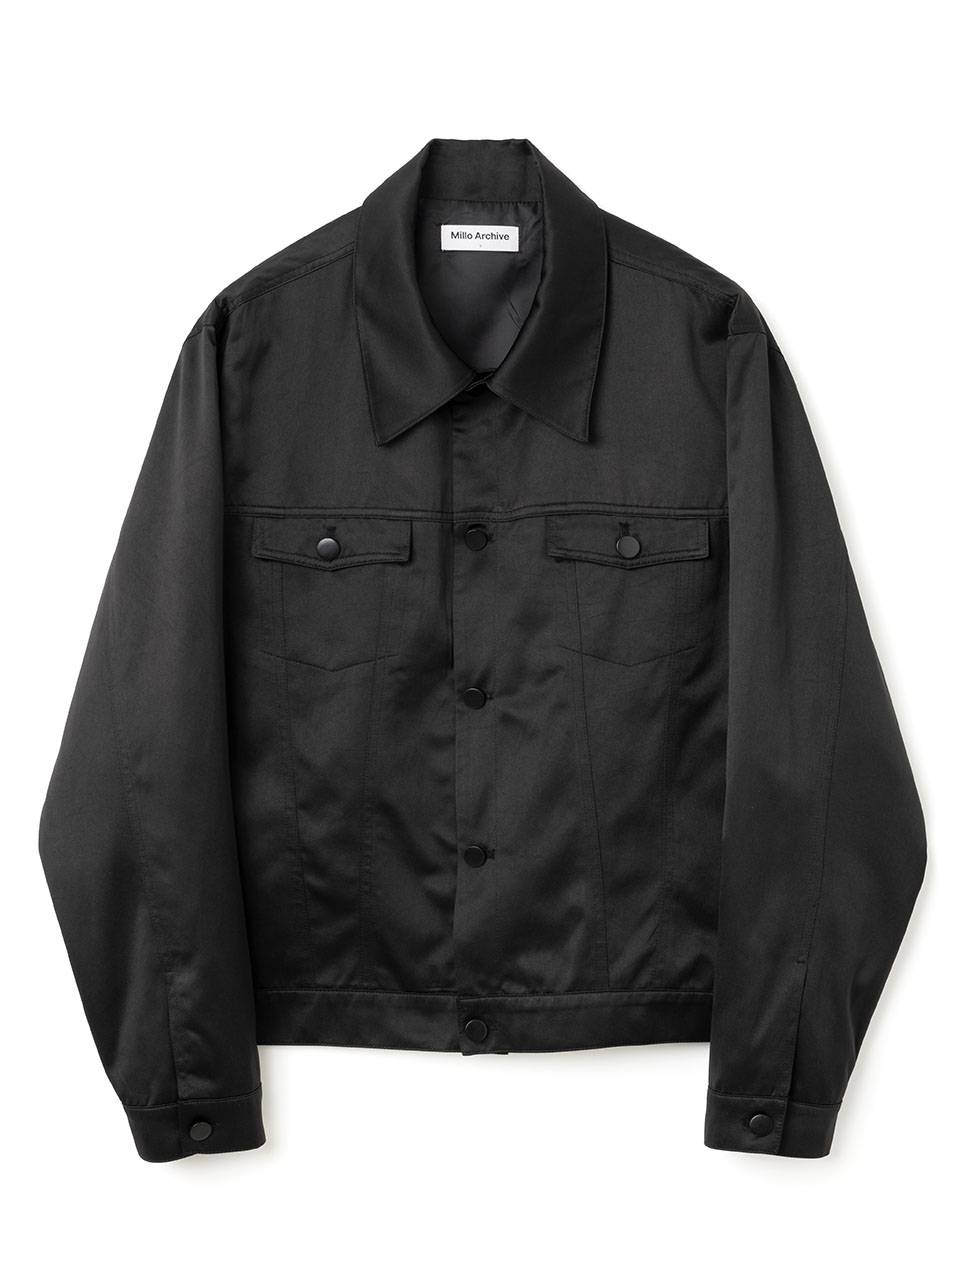 Sleek Trucker Jacket [Black]